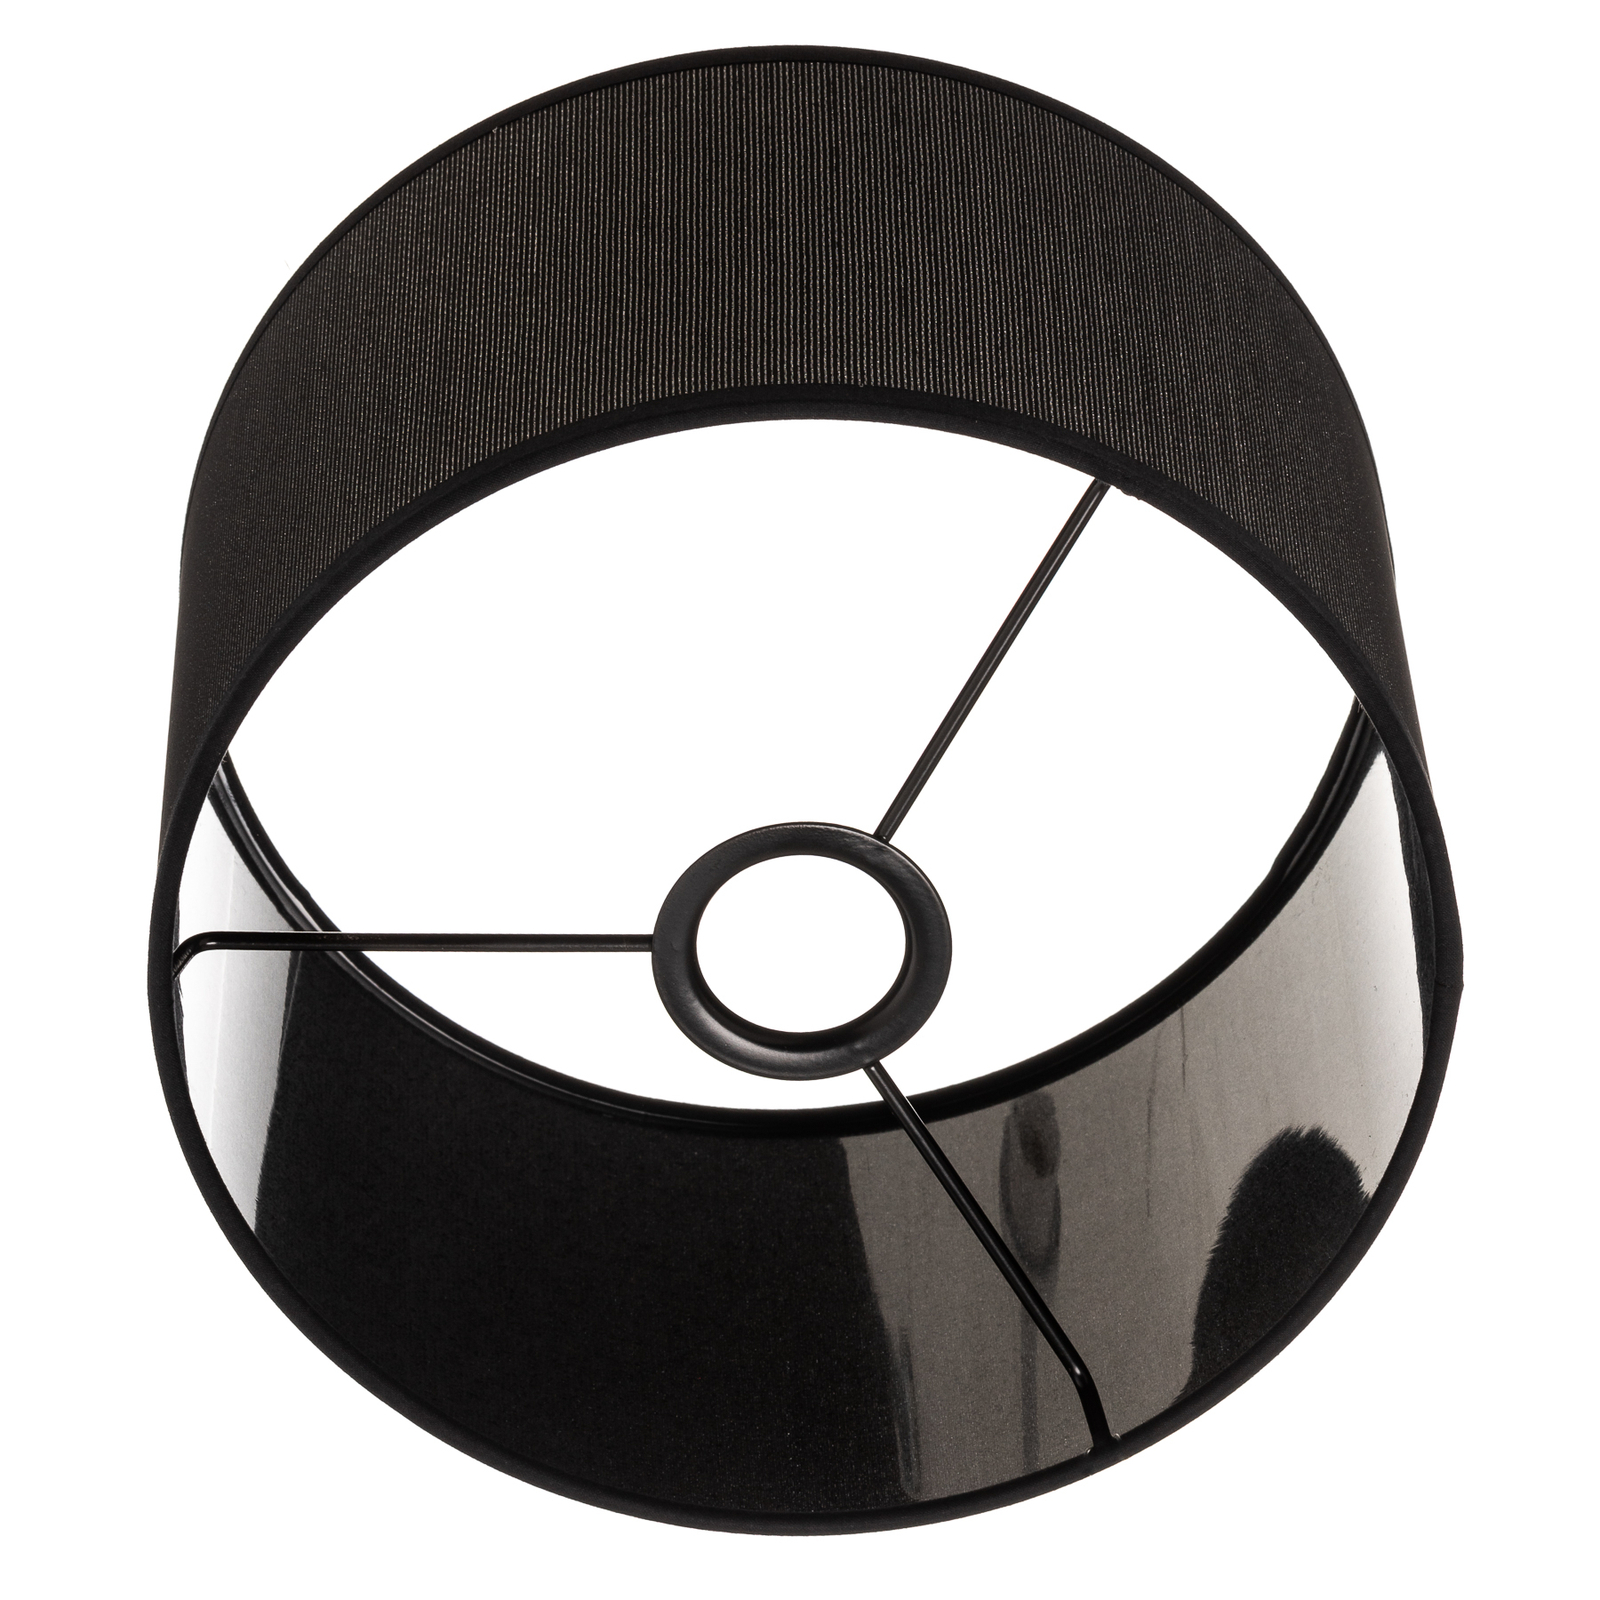 Abat-jour Roller Ø 25 cm, noir/argenté